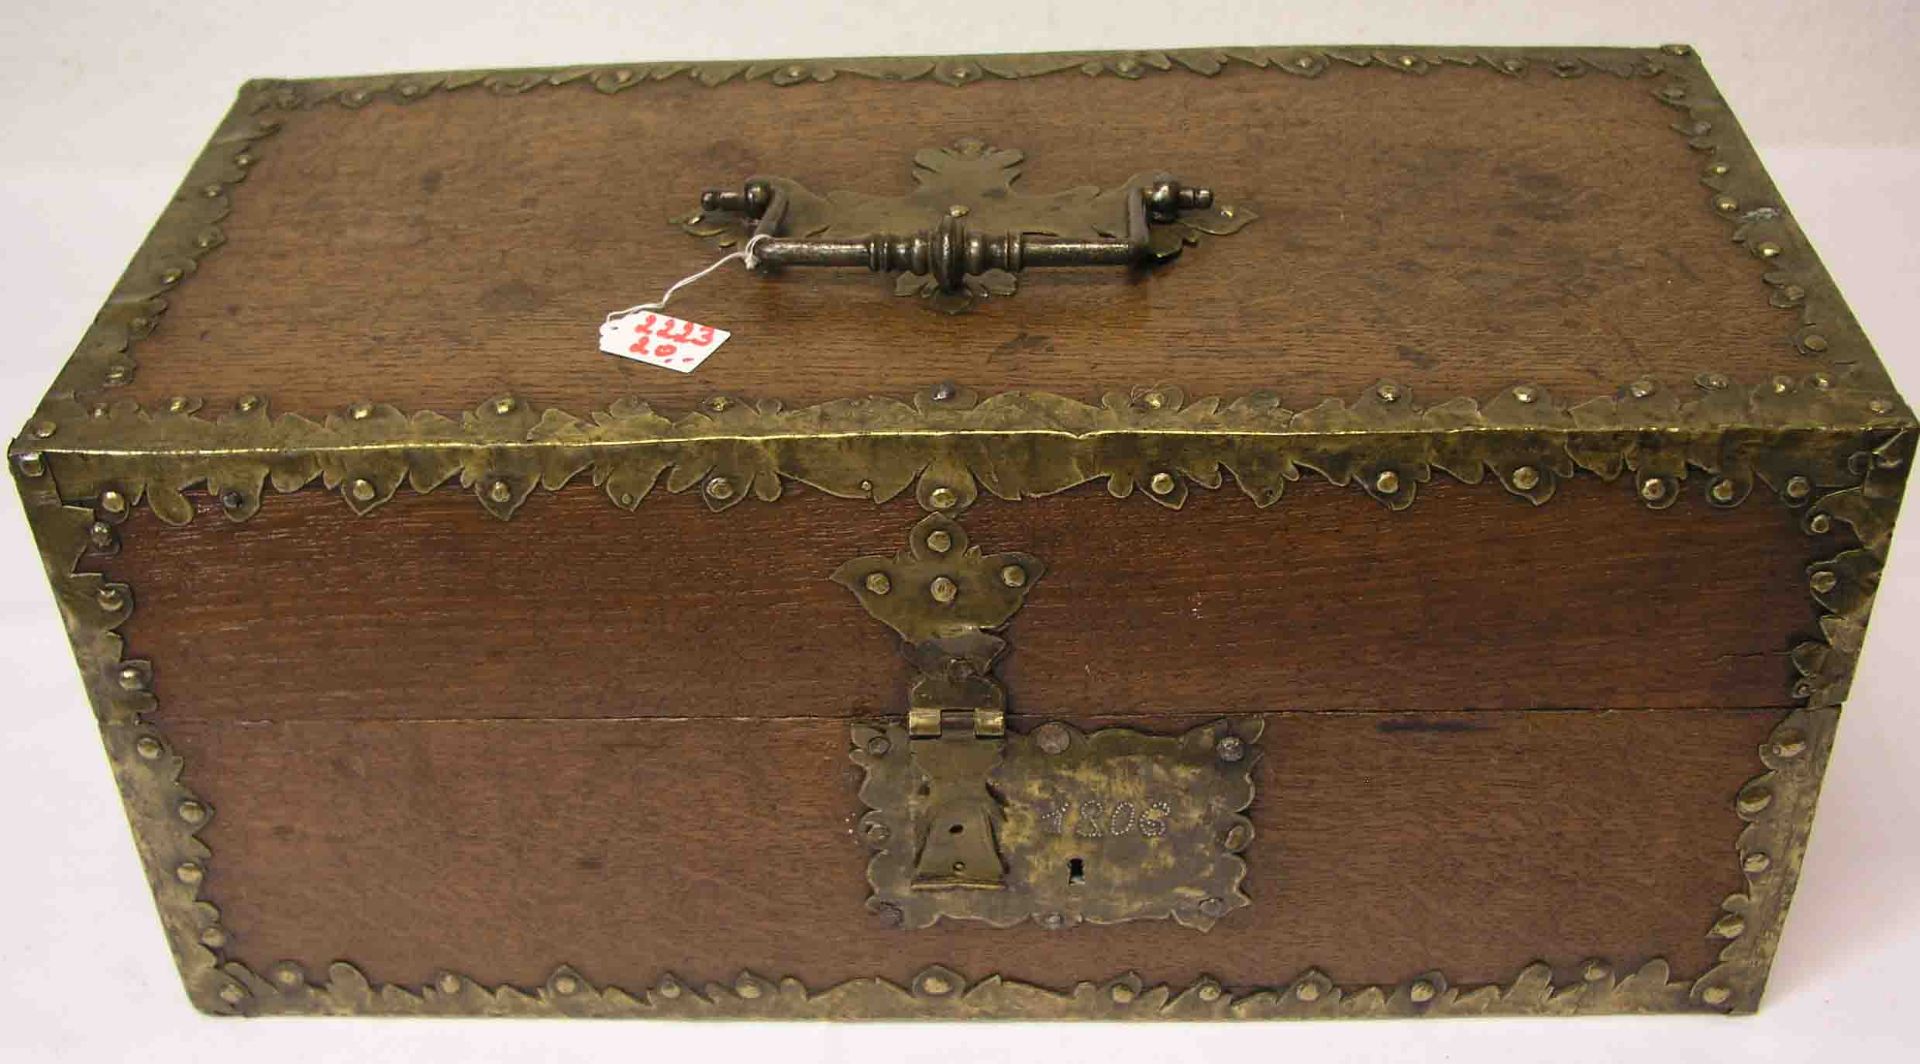 Holzschatulle mit Messingverzierungen, Tragebügel, datiert: 1806. Schlüssel fehlt, Schloss